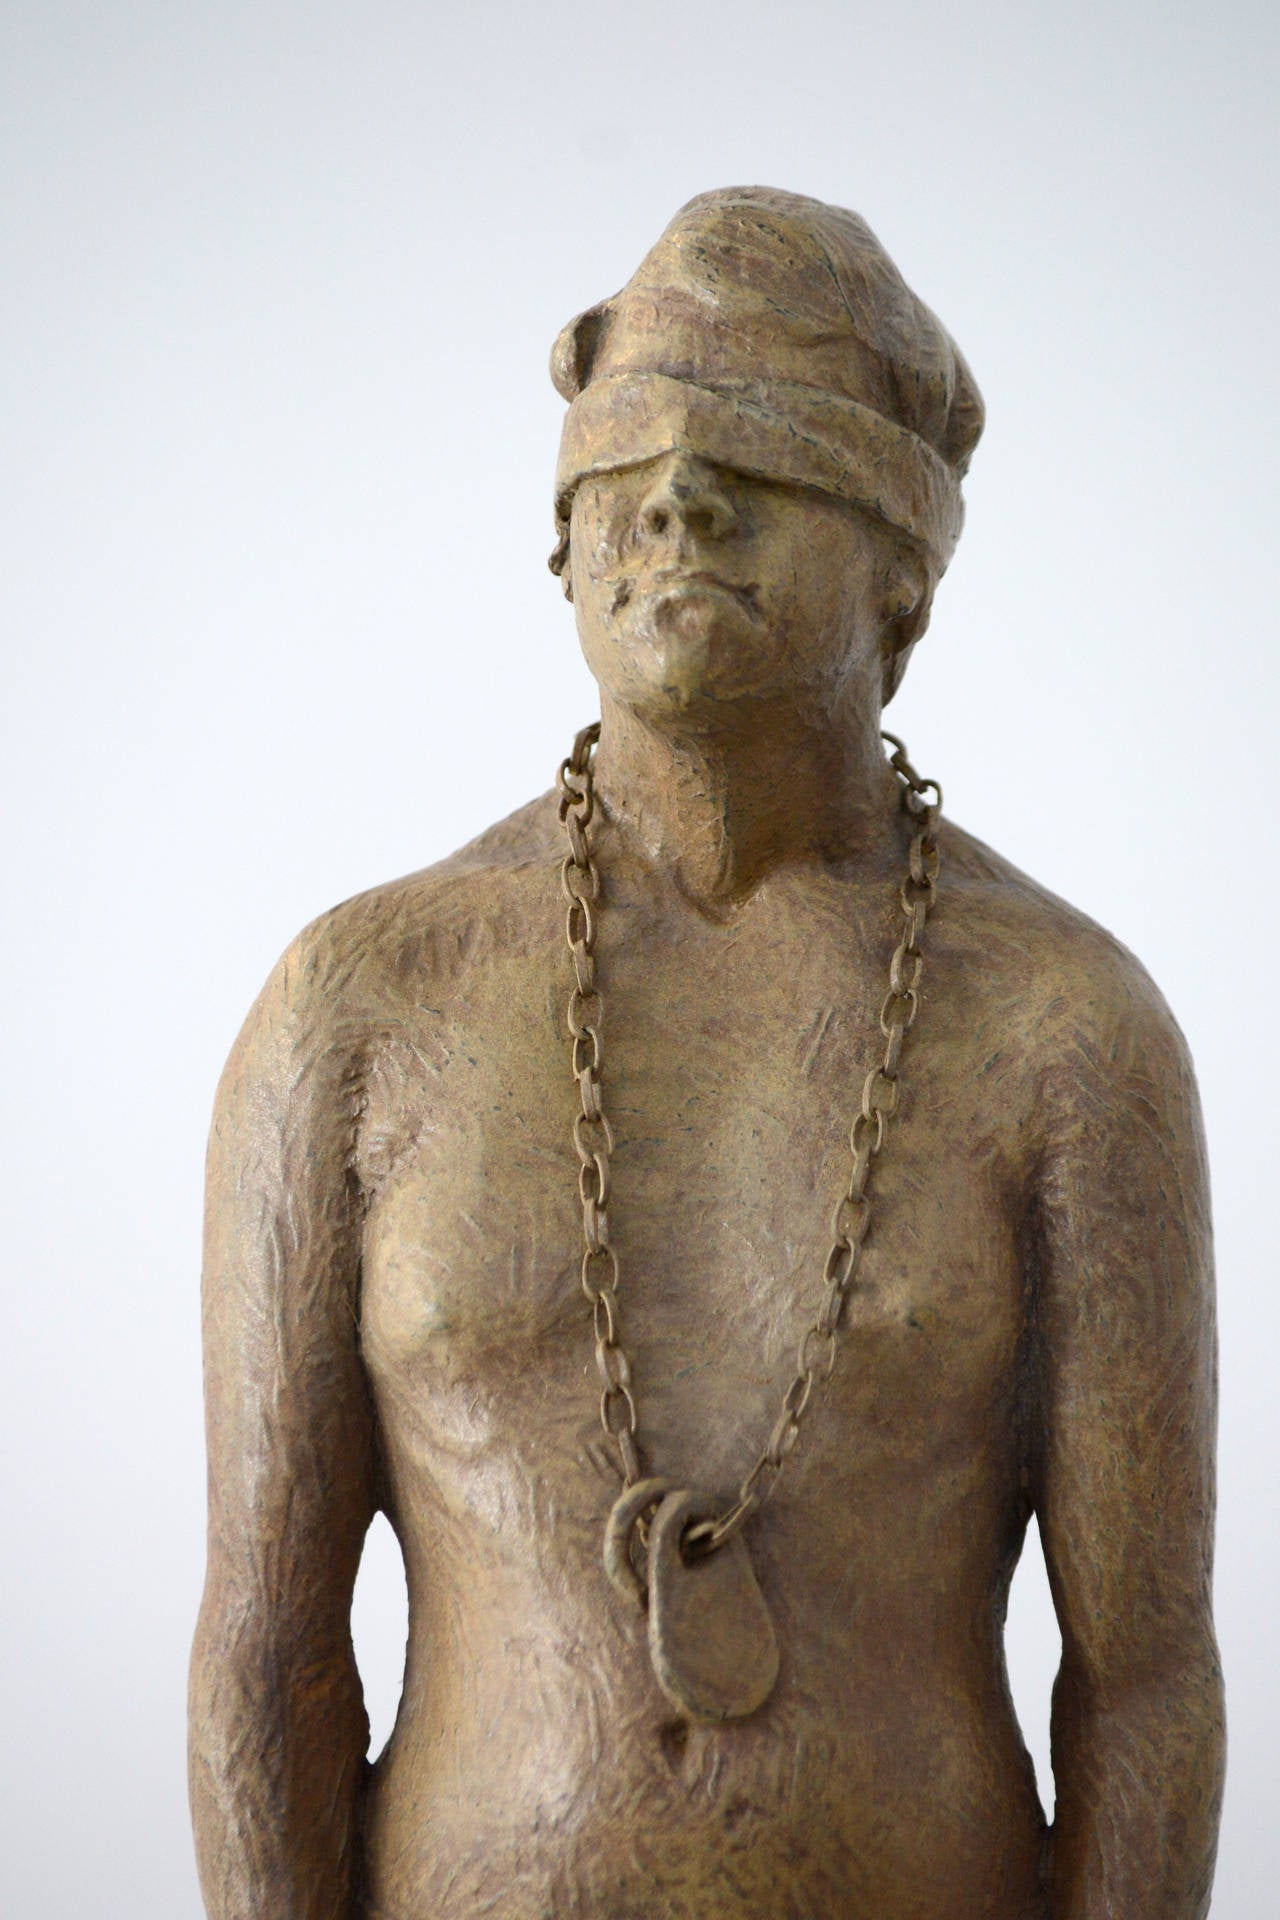 
SELF ist eine fesselnde und mehrdeutige Bronzeskulptur dieses talentierten jungen kanadischen Bildhauers.

(*1989, Kingston, ON) Nicholas Crombach absolvierte den Studiengang für Bildhauerei und Installation an der OCAD University. Seine